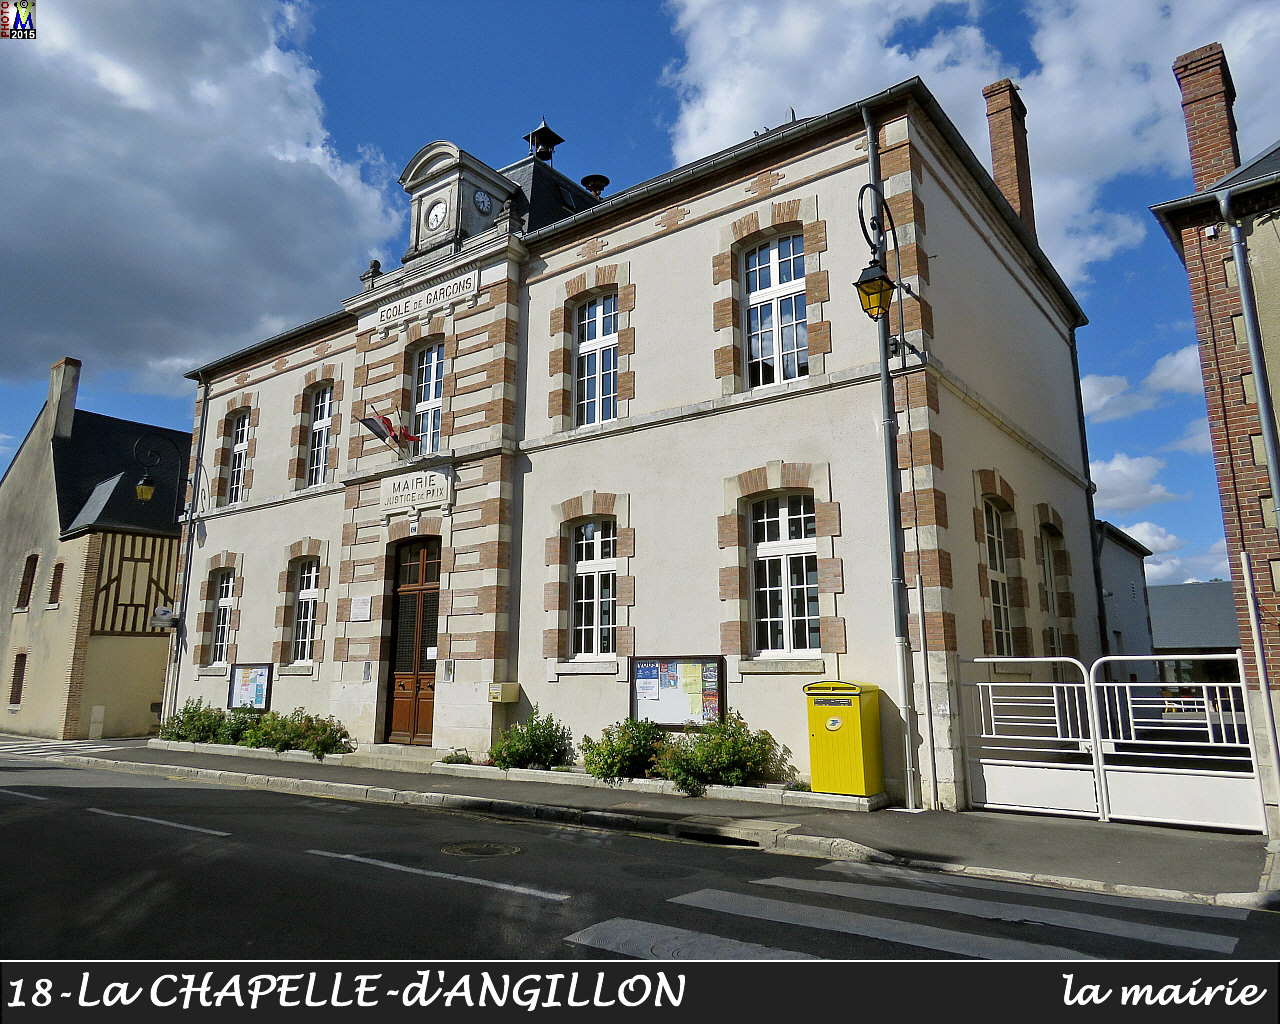 18CHAPELLE-ANGILLON_mairie_100.jpg